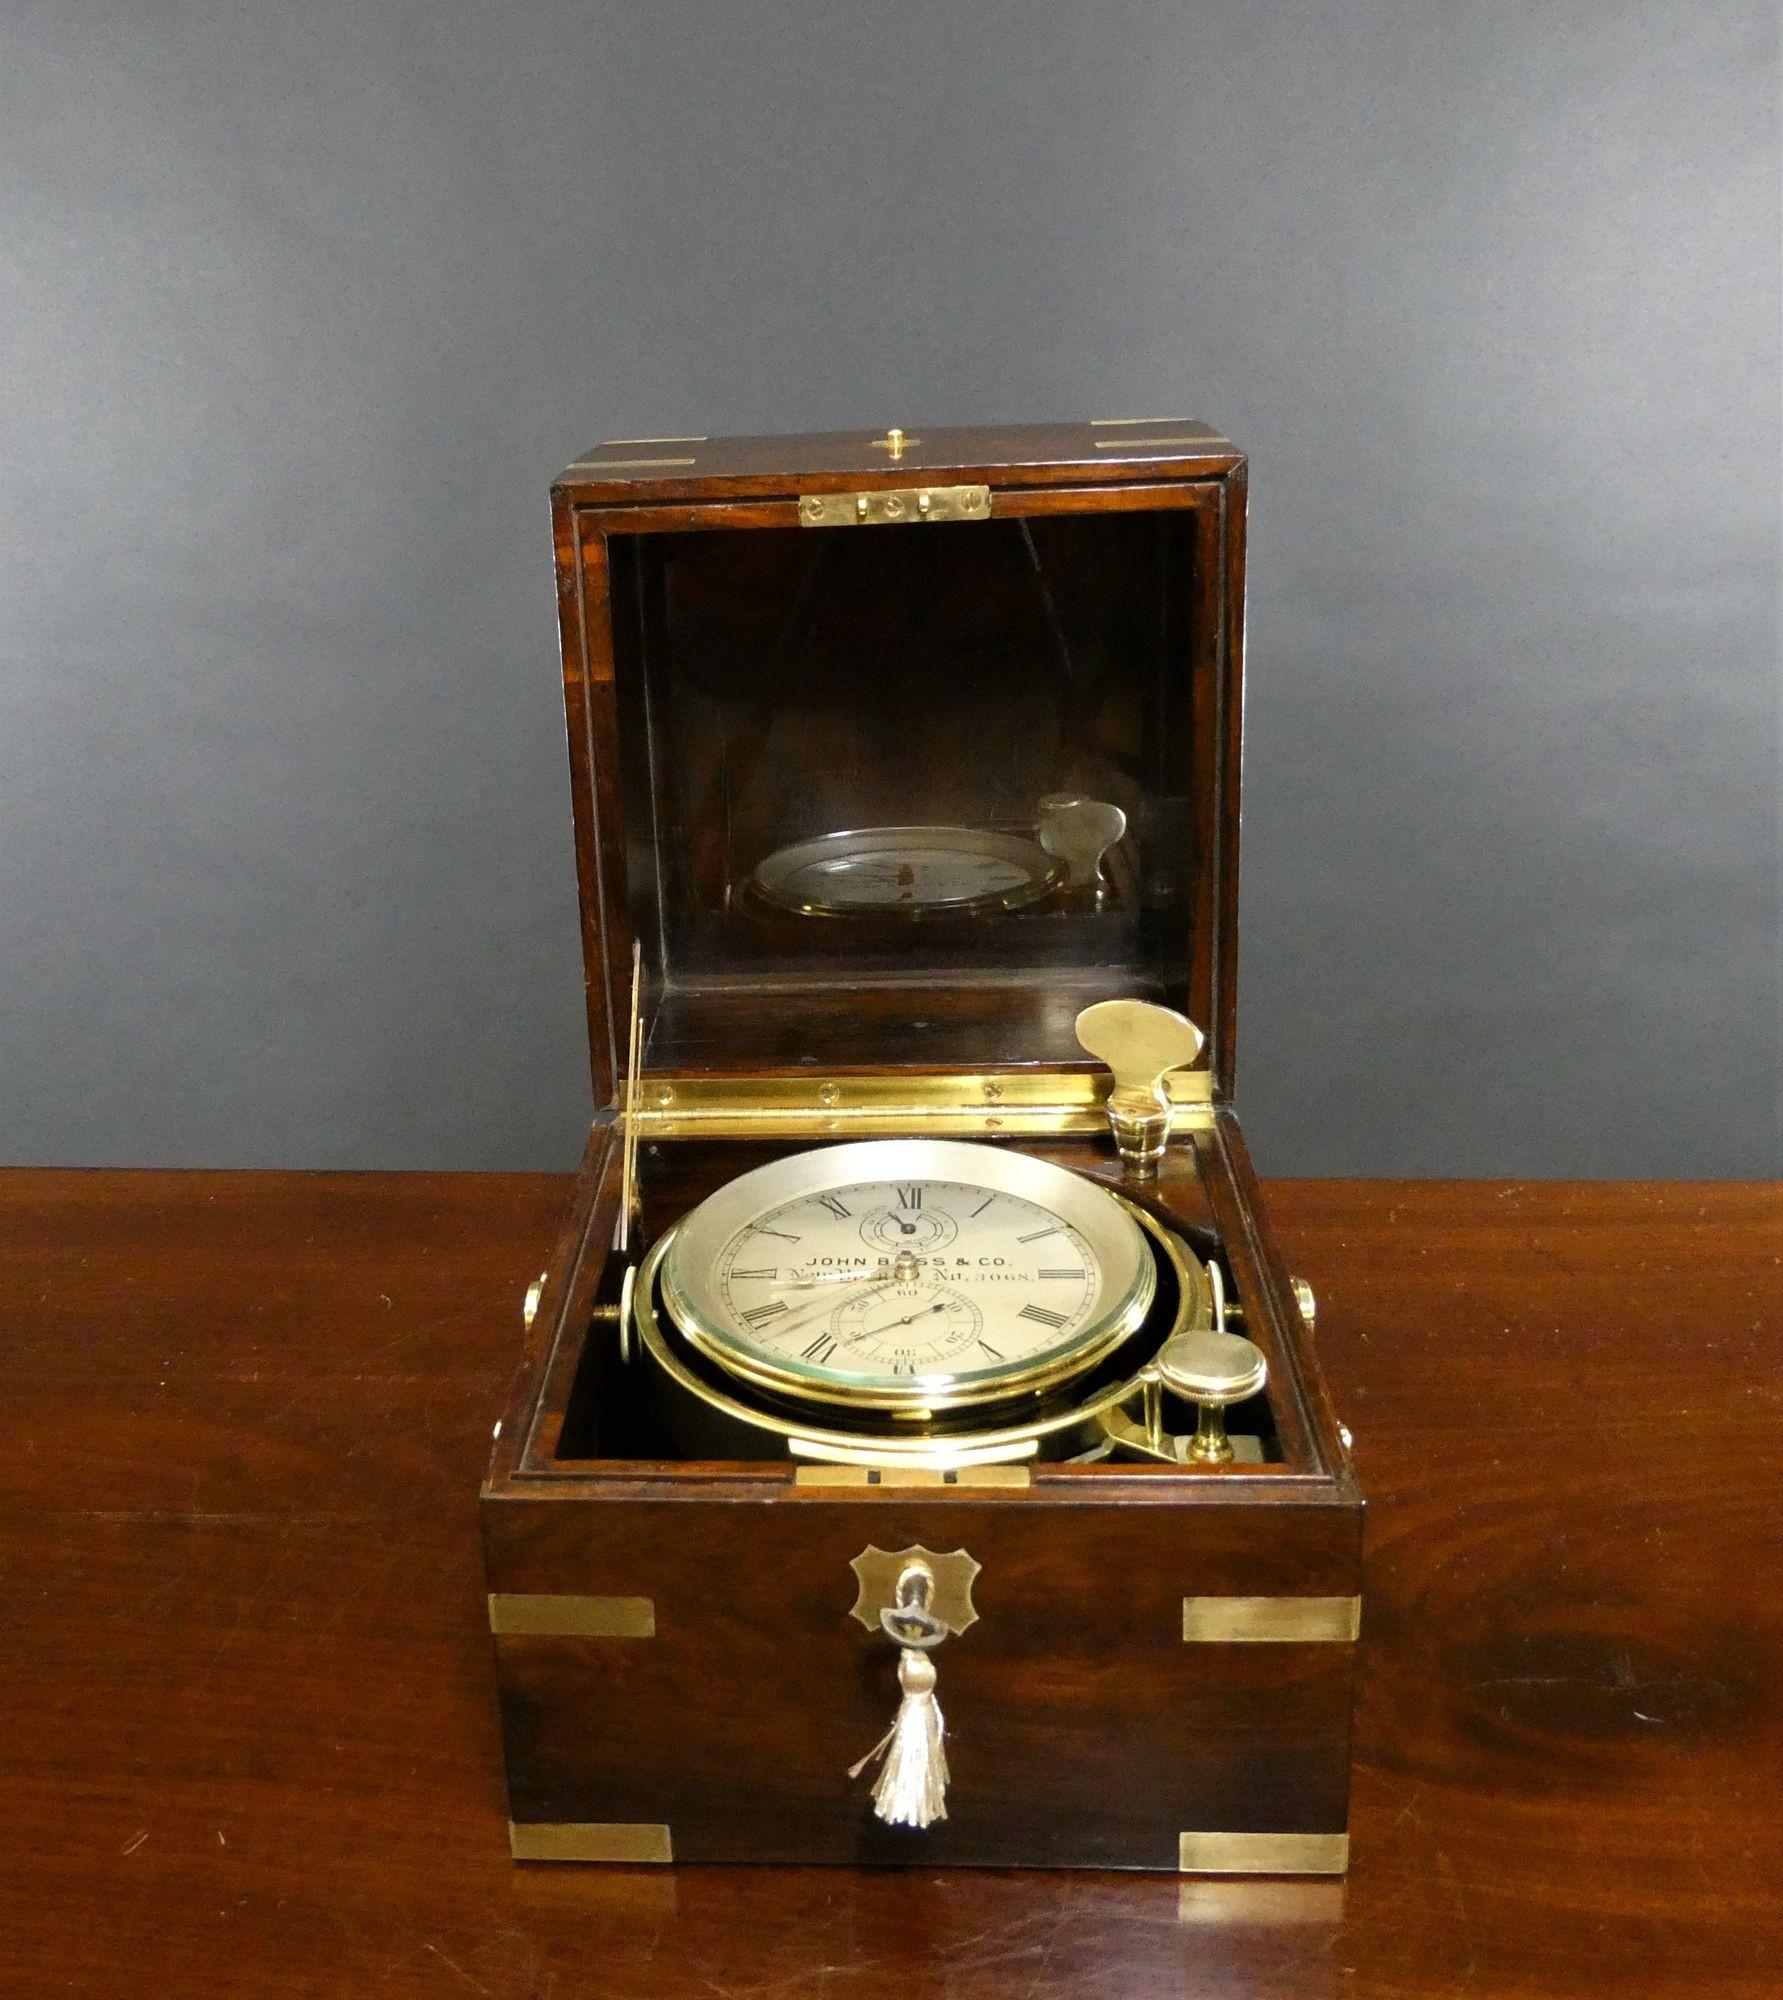 Ein feiner Zwei-Tage-Marinechronometer von John Bliss and Co, New York. Nr. 3068
 
Zwei-Tage-Marine-Chronometer von John Bliss & Co in einem schönen dreistöckigen Palisander-Messing-Kasten mit Messing-Tragegriffen an den Seiten,